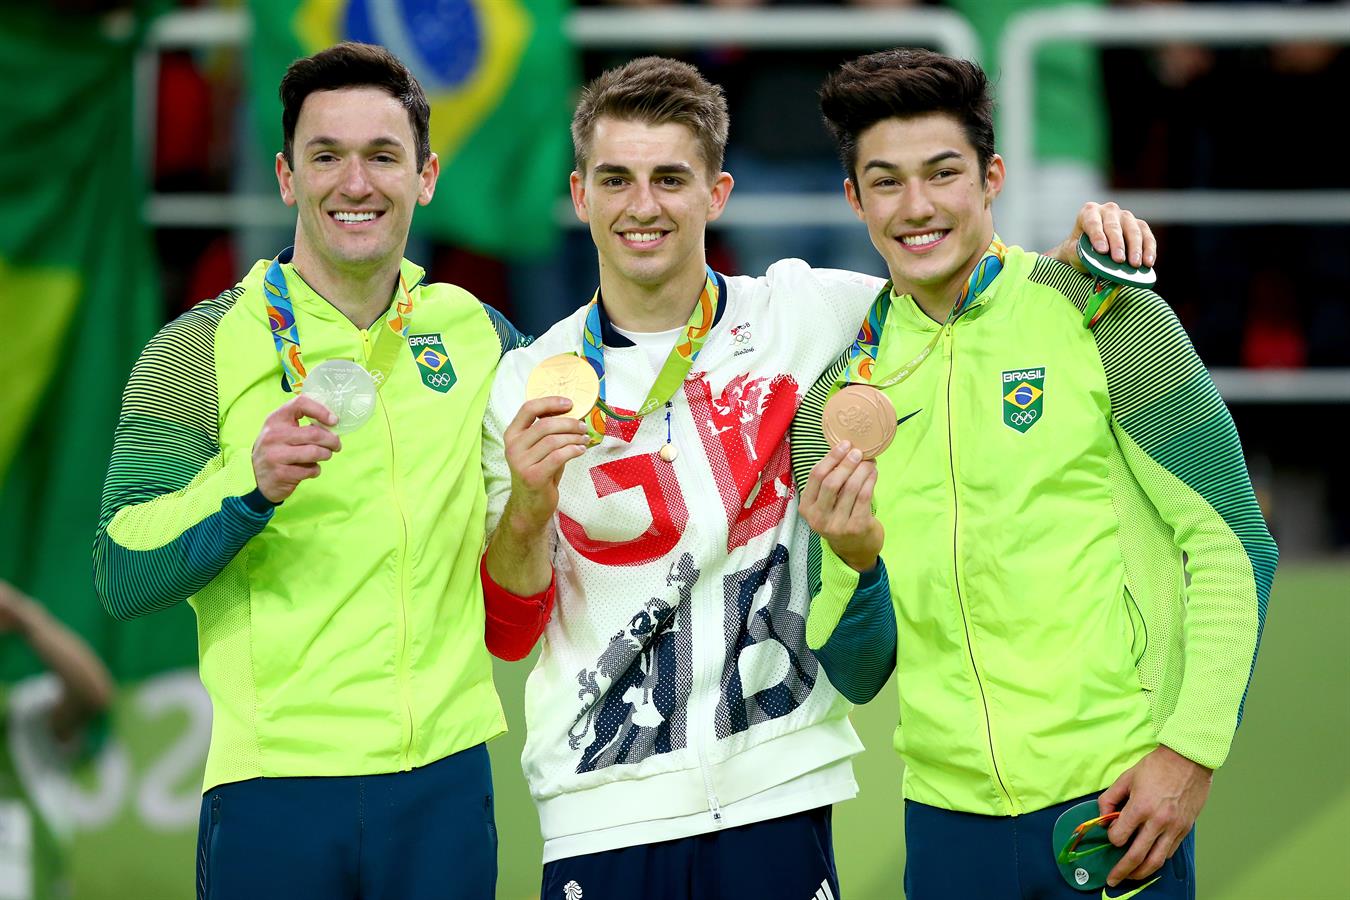 ژیمناستیک المپیک ریو 2016؛ بخش حرکات زمینی مردان؛ نماینده بریتانیا طلا گرفت